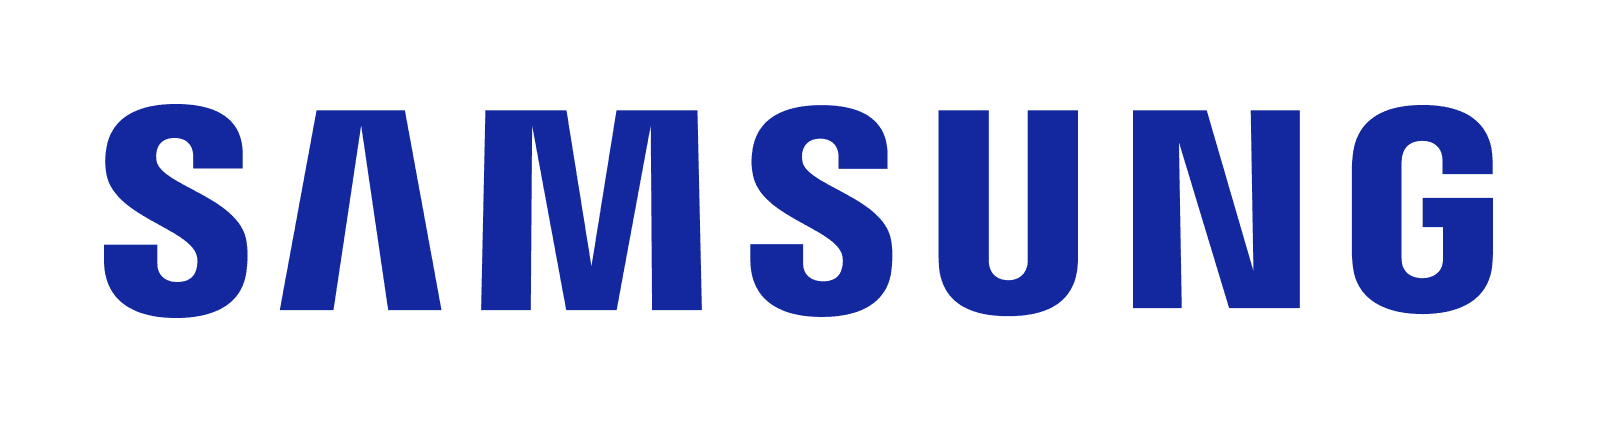 Samsung_Orig_Wordmark_BLUE_RGB_e06f82842e.png?